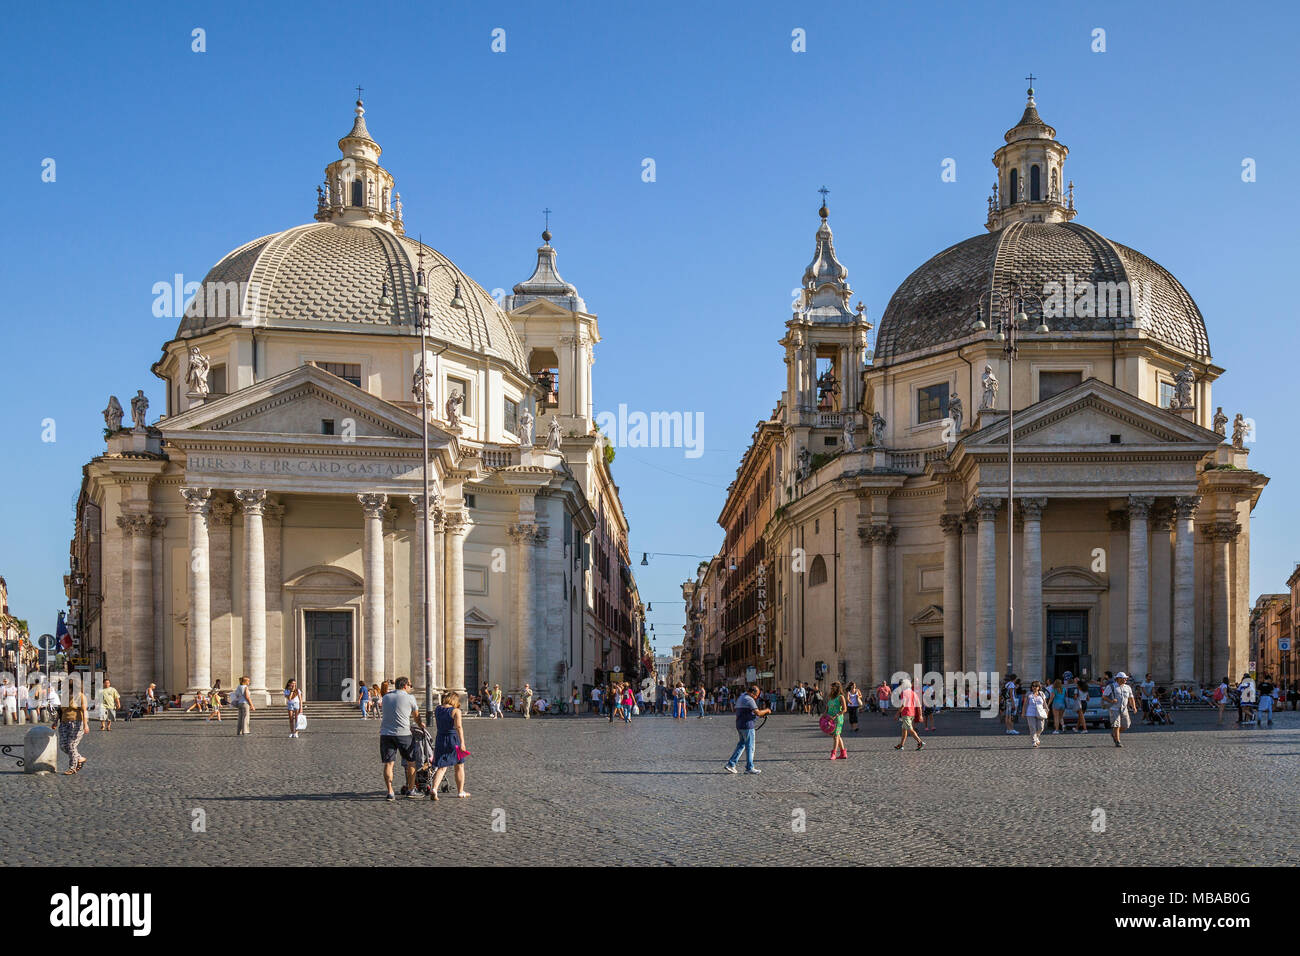 Les touristes dans la place pavée de la Piazza del Popolo (traduit de l'italien signifiant littéralement "Place du Peuple") avec le "twin" églises de Santa Maria Banque D'Images